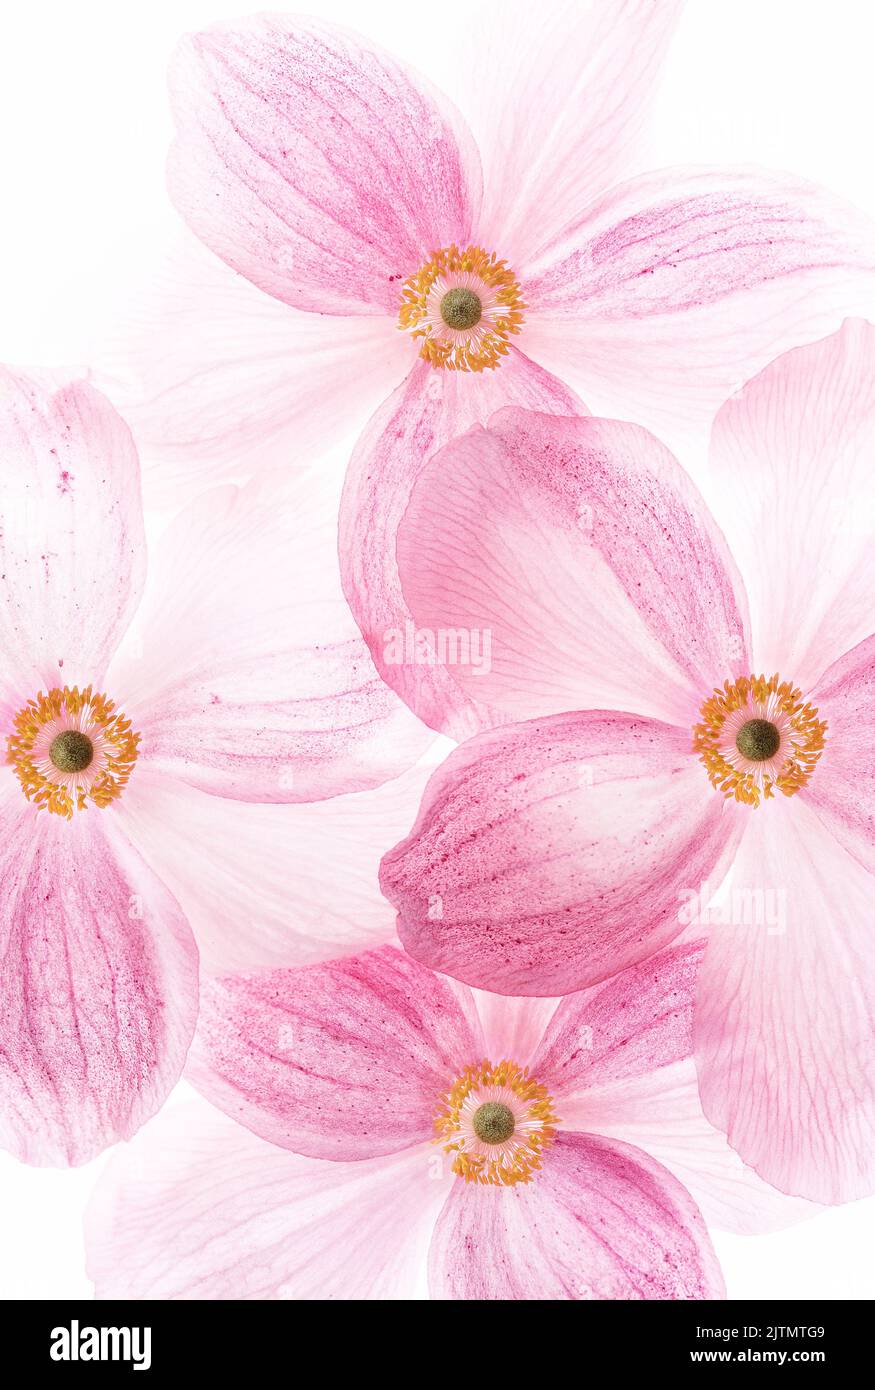 Image créative de fleurs roses. Mise au point sélective Banque D'Images